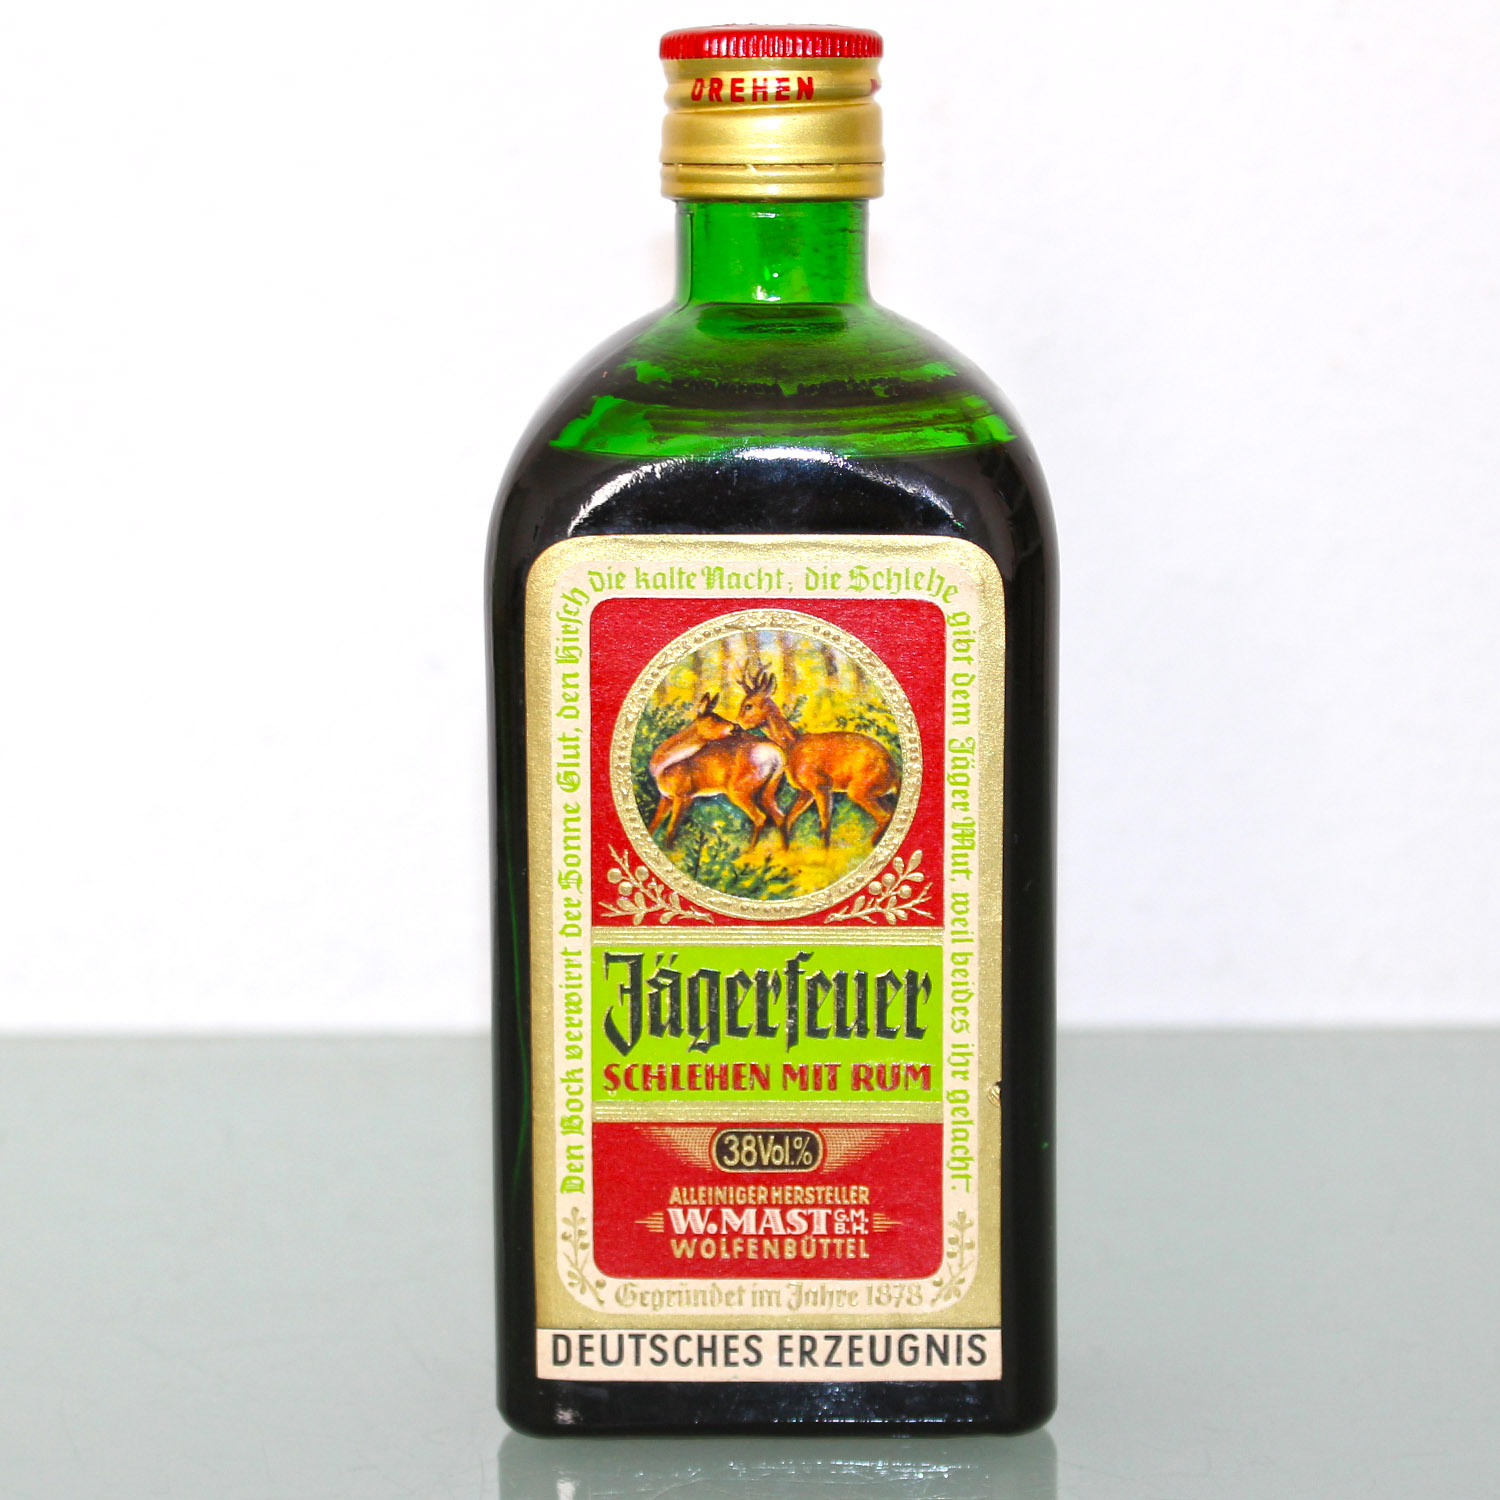 Jägermeister W. Mast Jägerfeuer Schlehen mit Rum